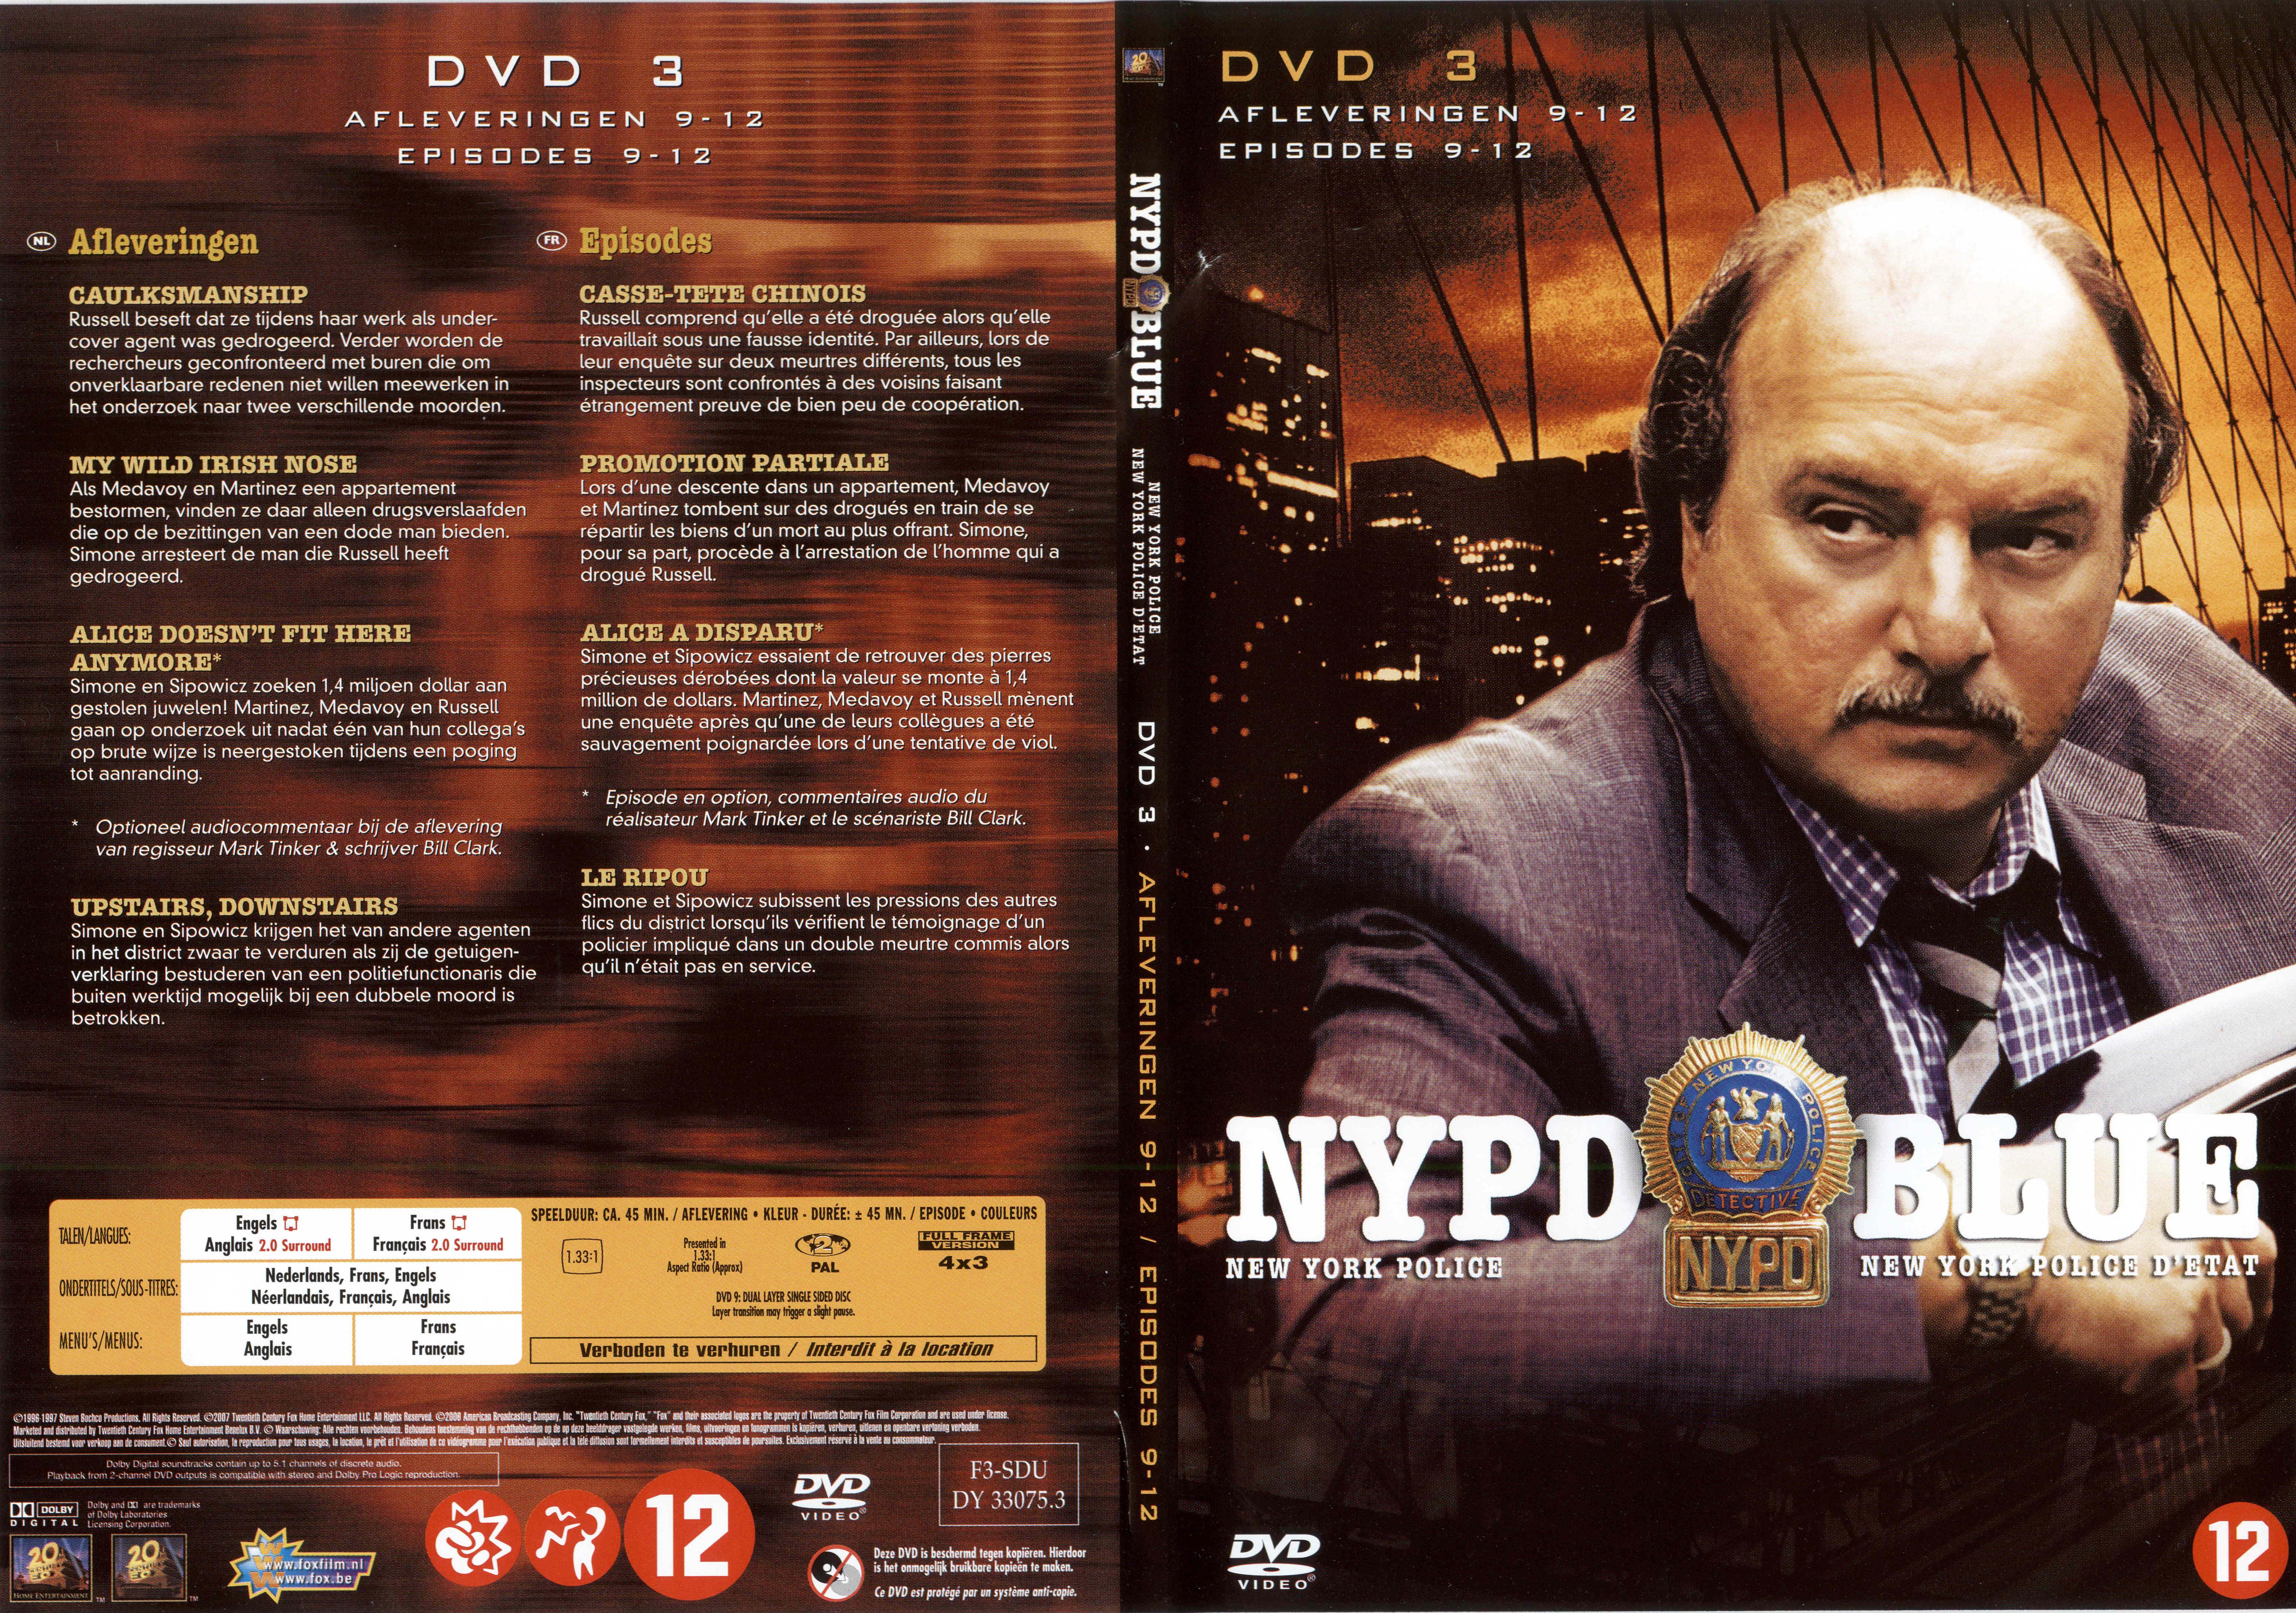 Jaquette DVD NYPD Blue saison 04 dvd 03